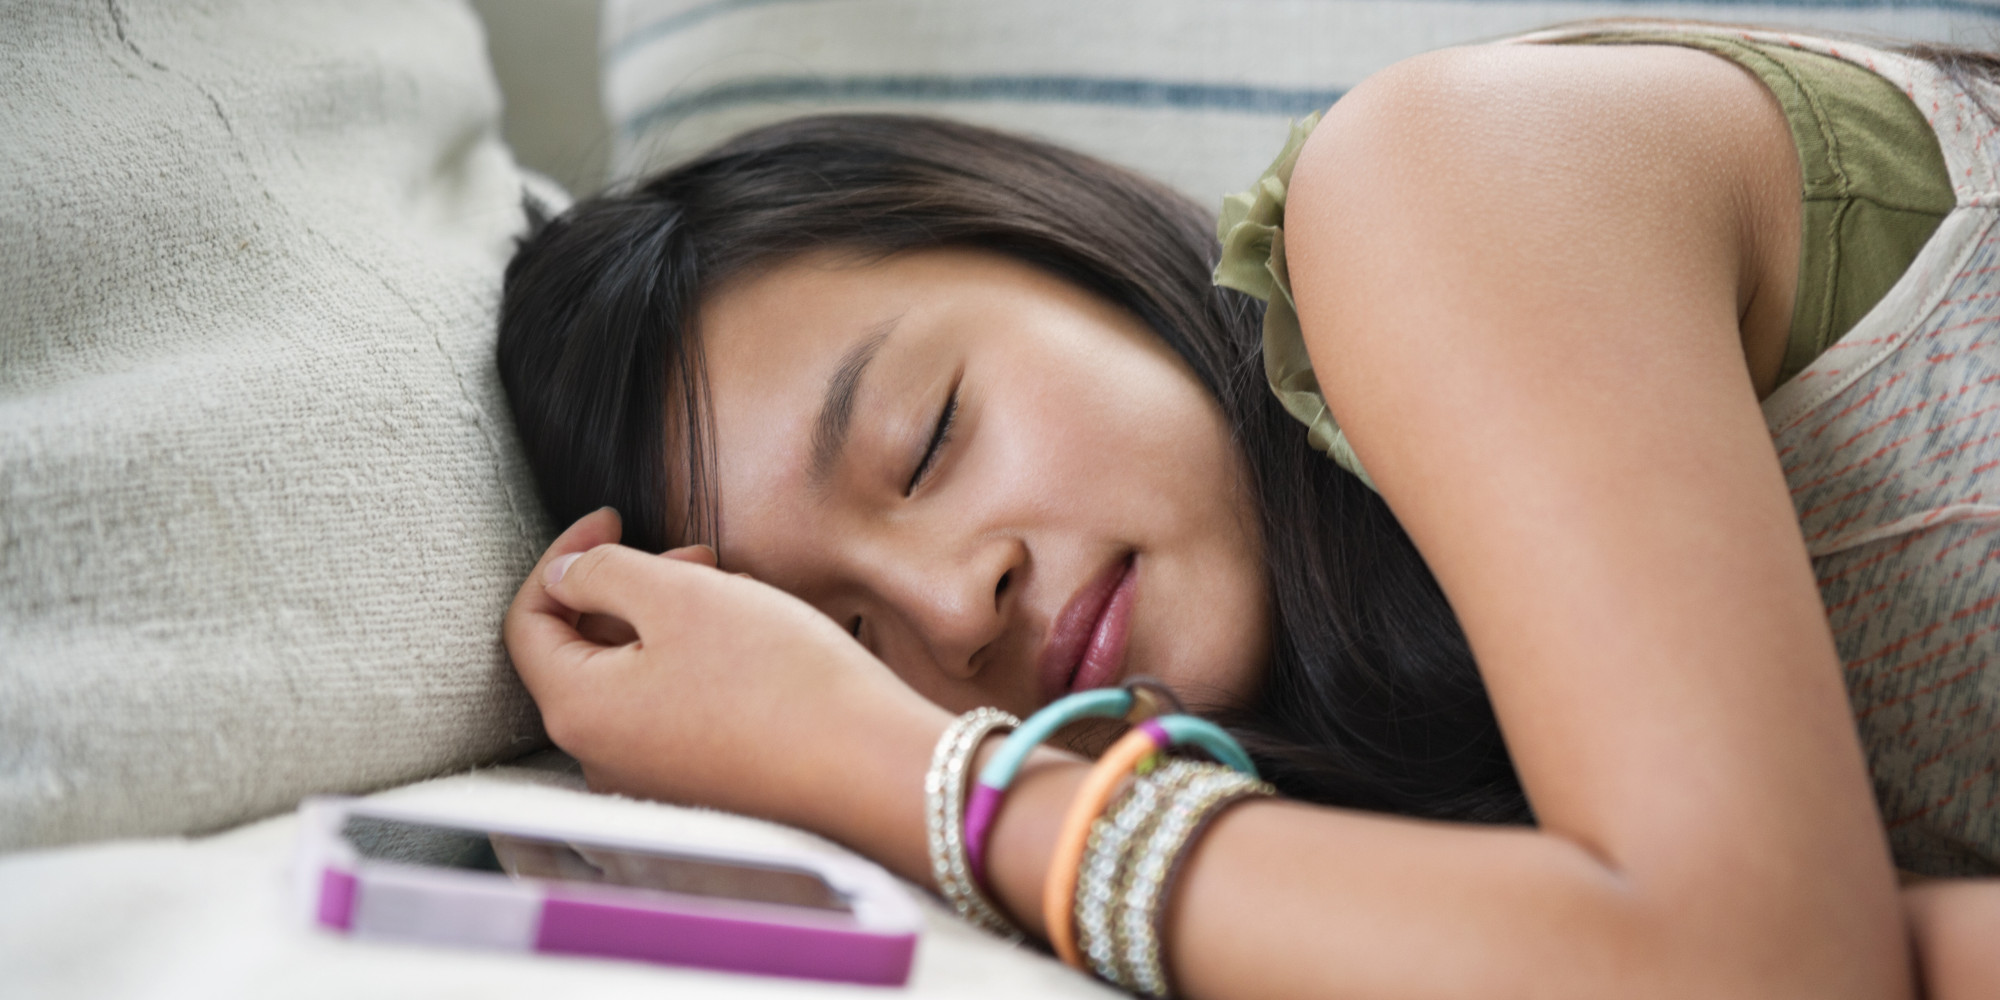 Teen Sleep Cycles May 9